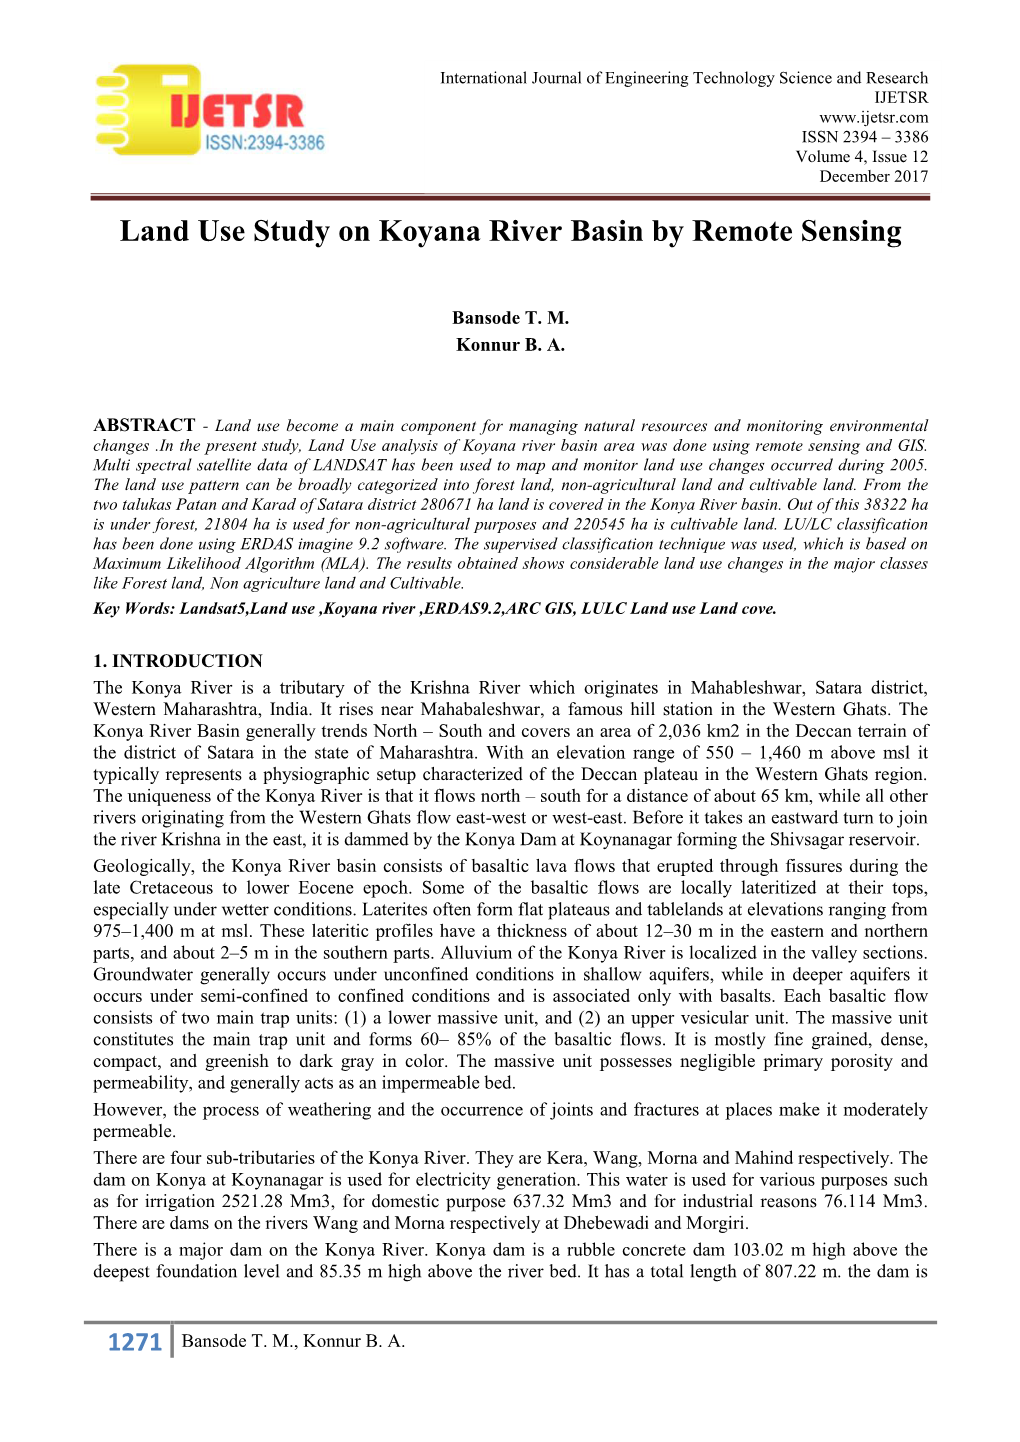 Land Use Study on Koyana River Basin by Remote Sensing